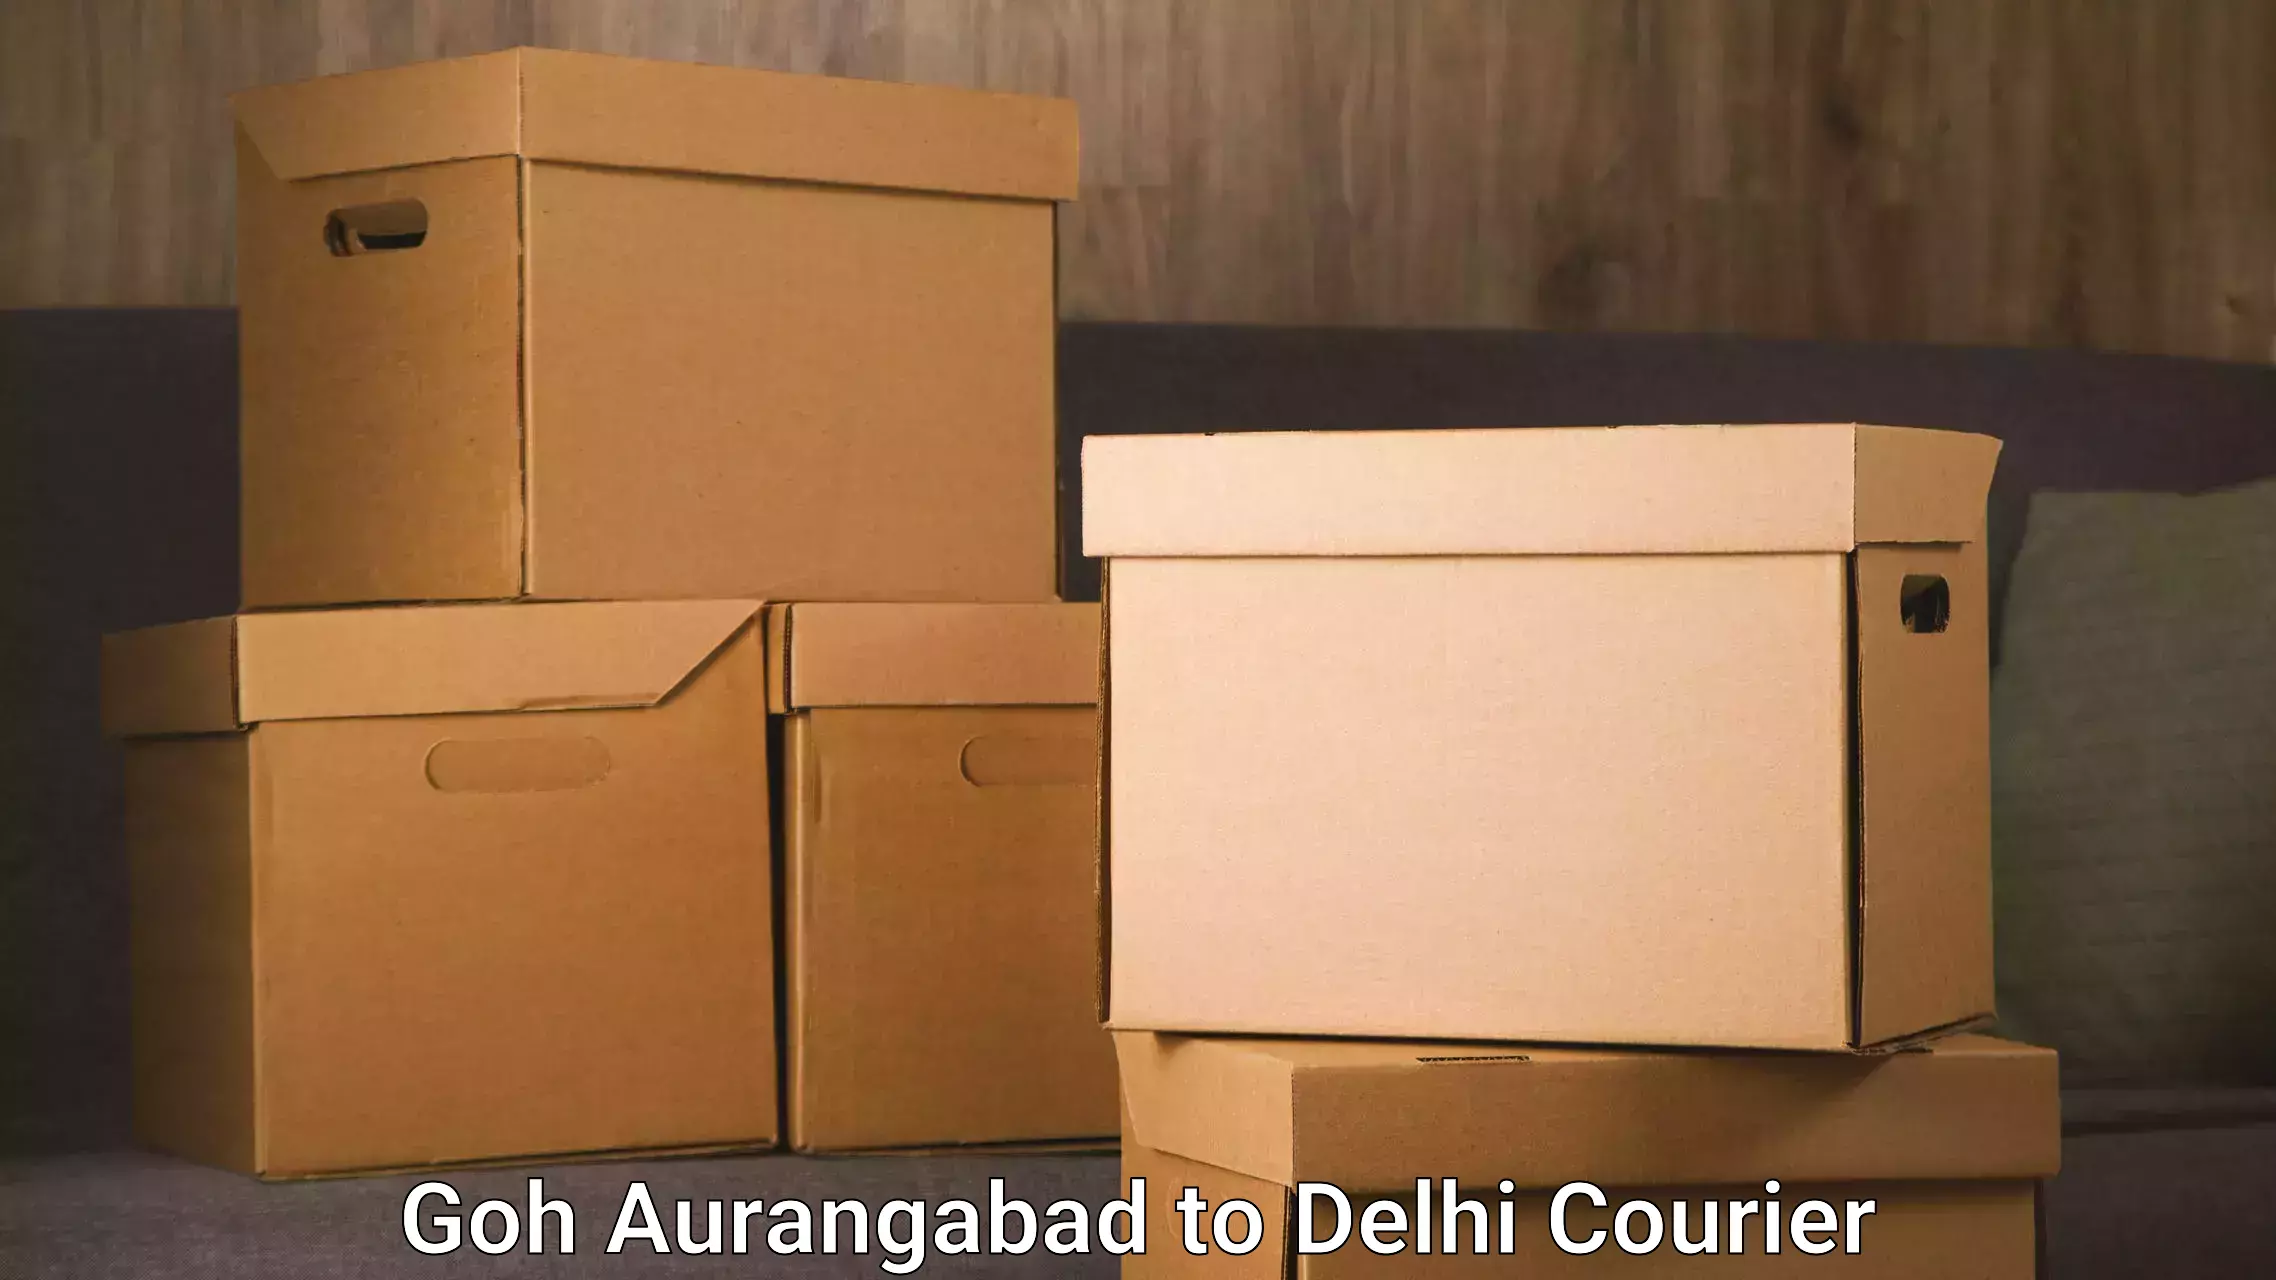 Trusted moving company Goh Aurangabad to University of Delhi